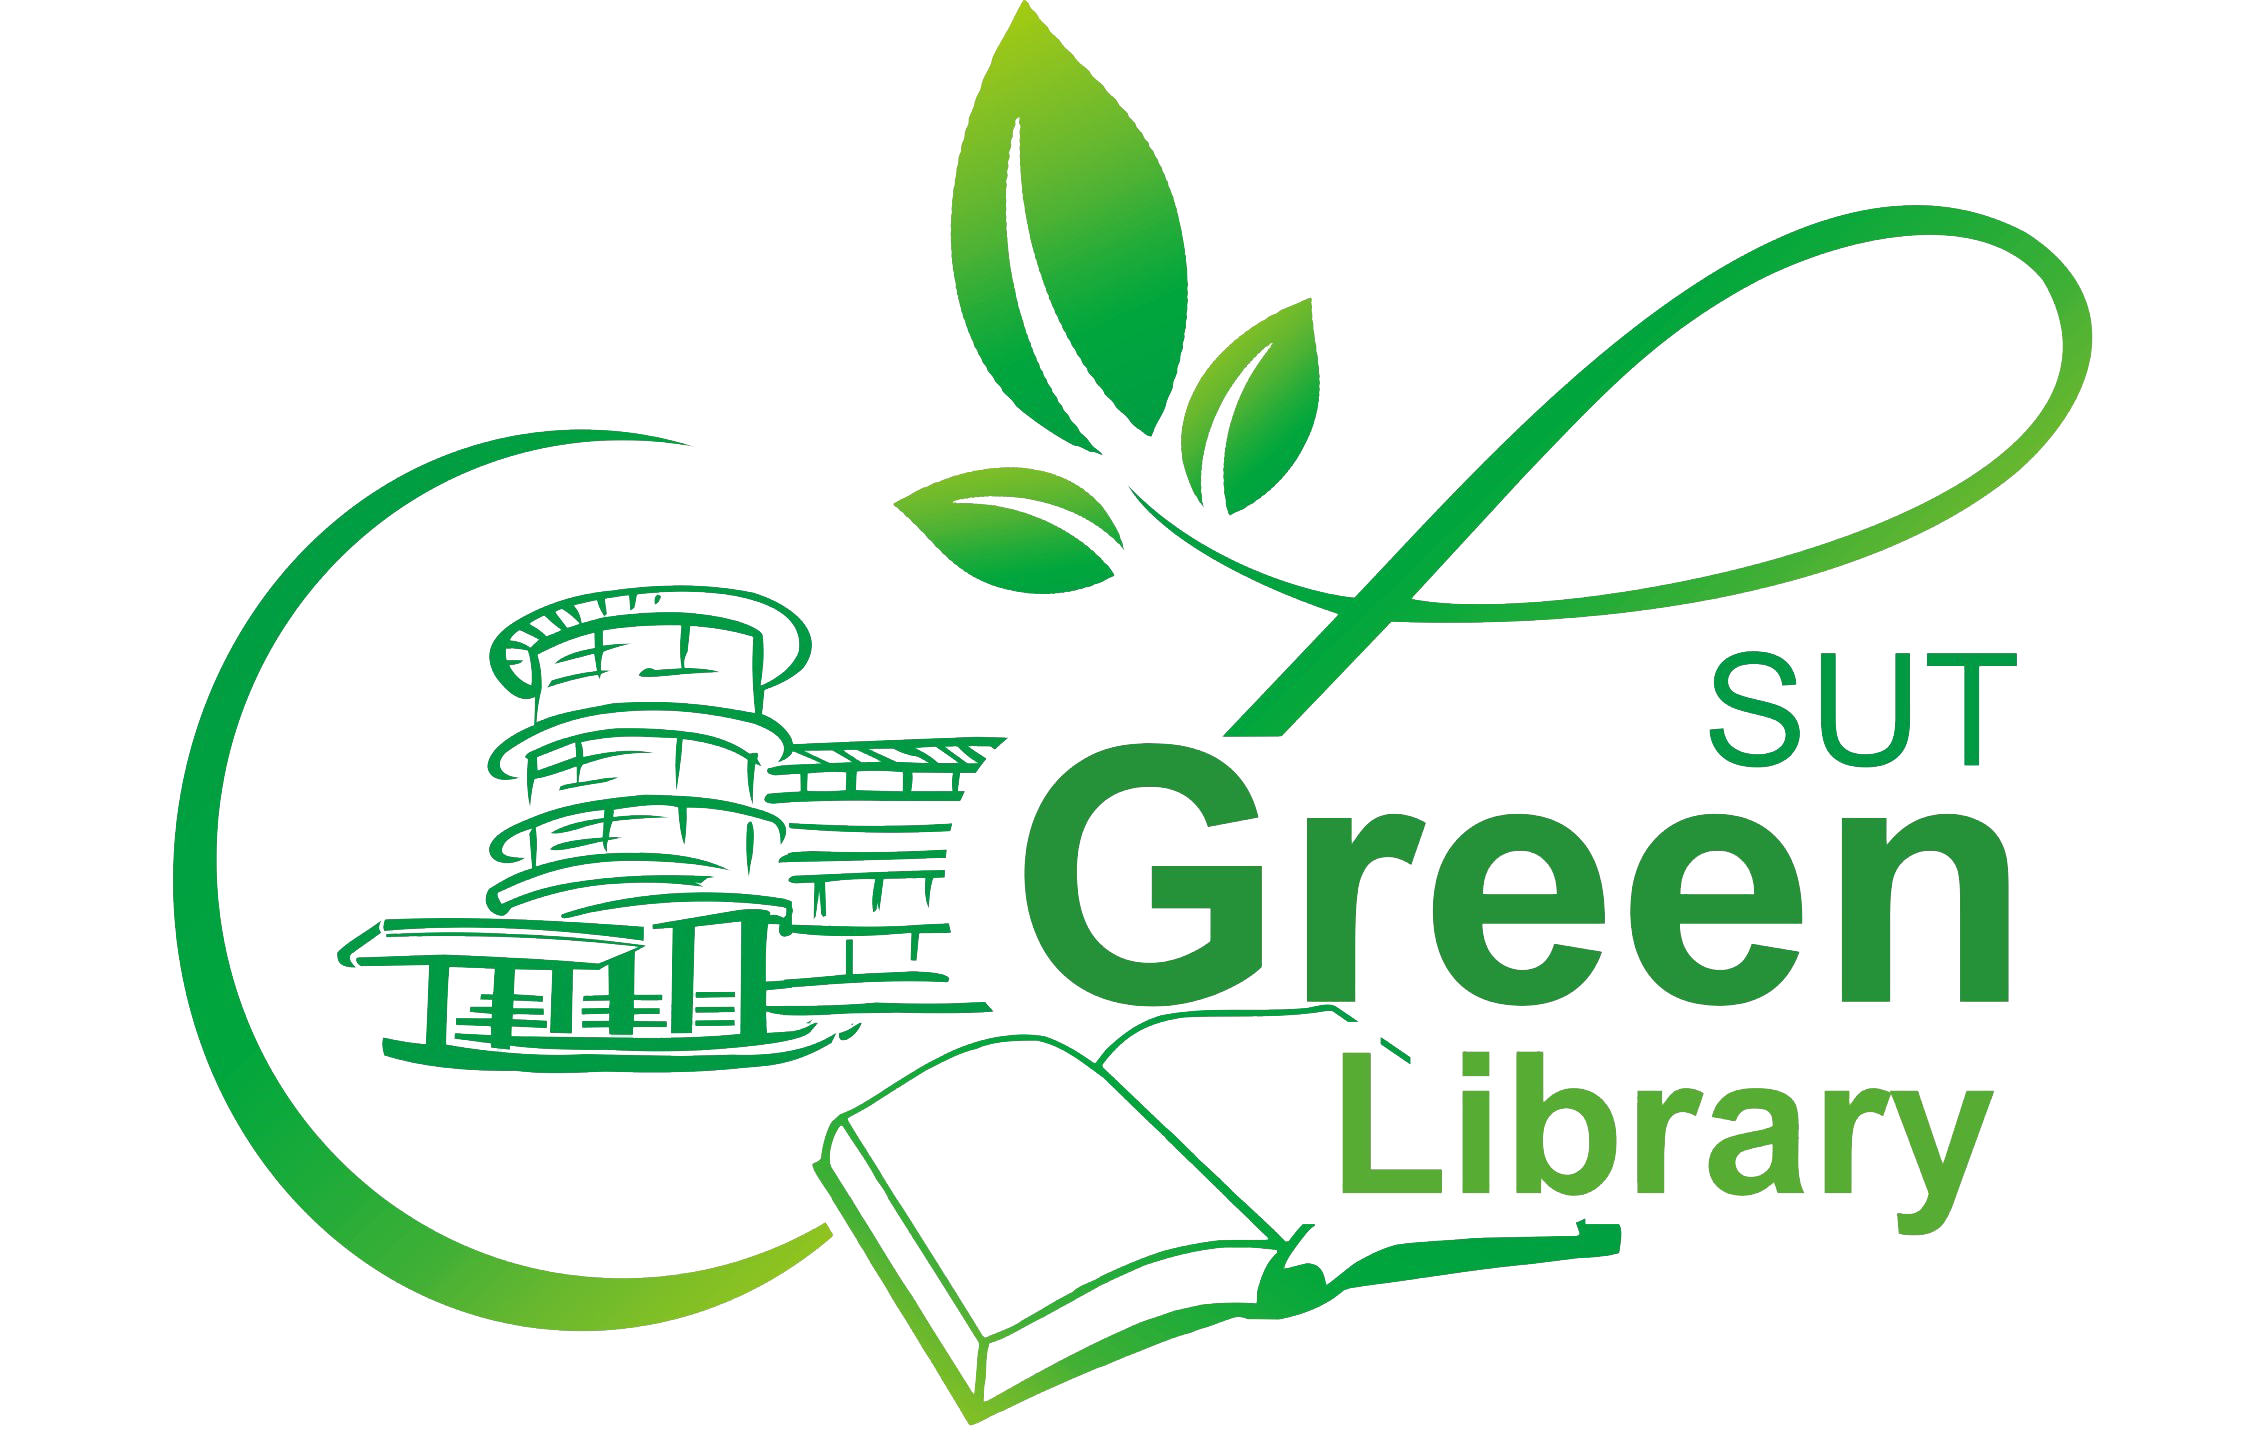 ห้องสมุดสีเขียว มหาวิทยาลัยเทคโนโลยีสุรนารี